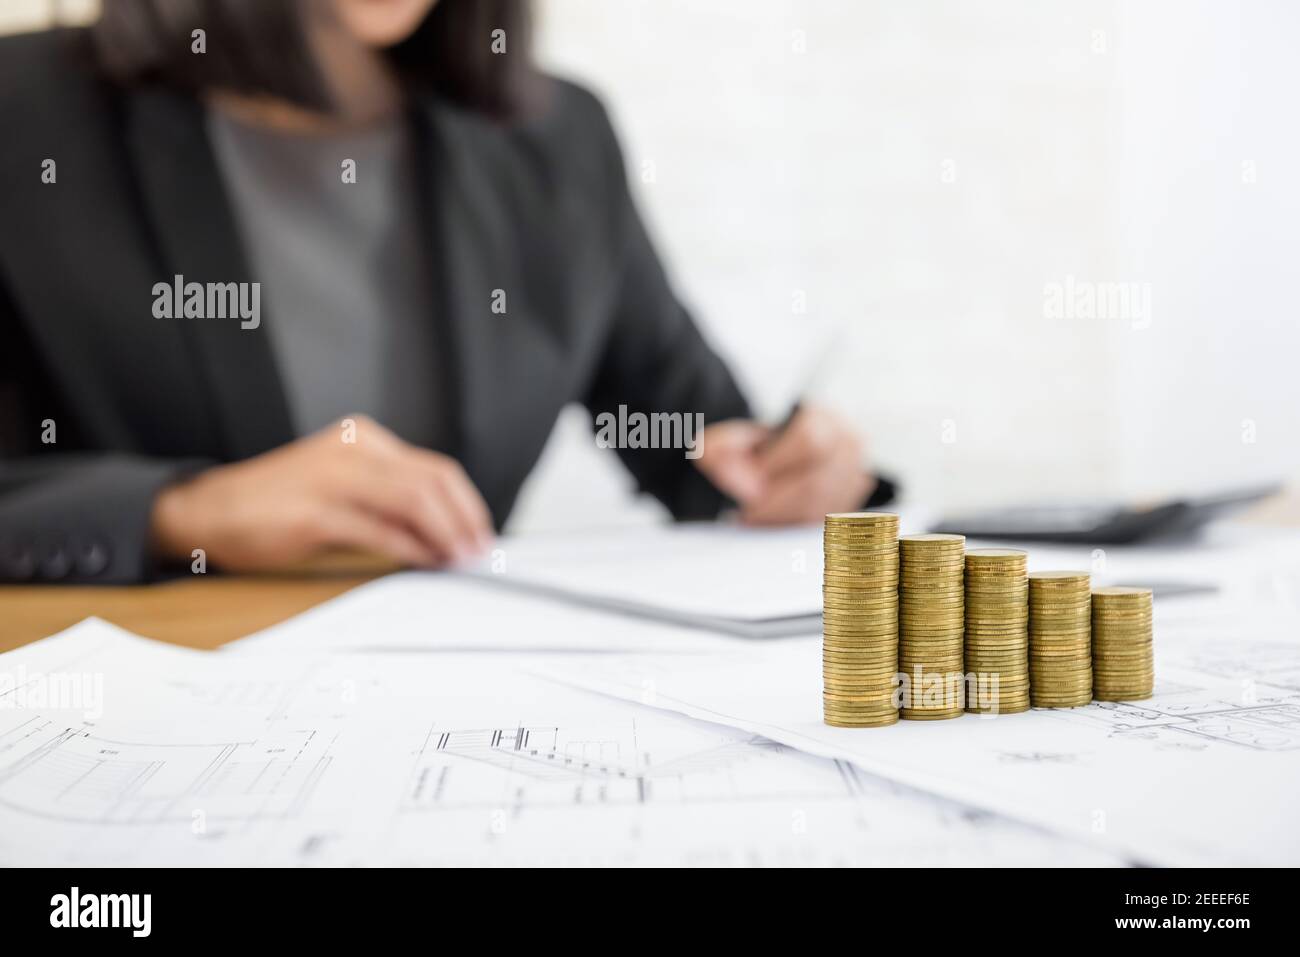 Empresaria revisando el documento con dinero y planos sobre la mesa - conceptos de inversión inmobiliaria y inmobiliaria Foto de stock